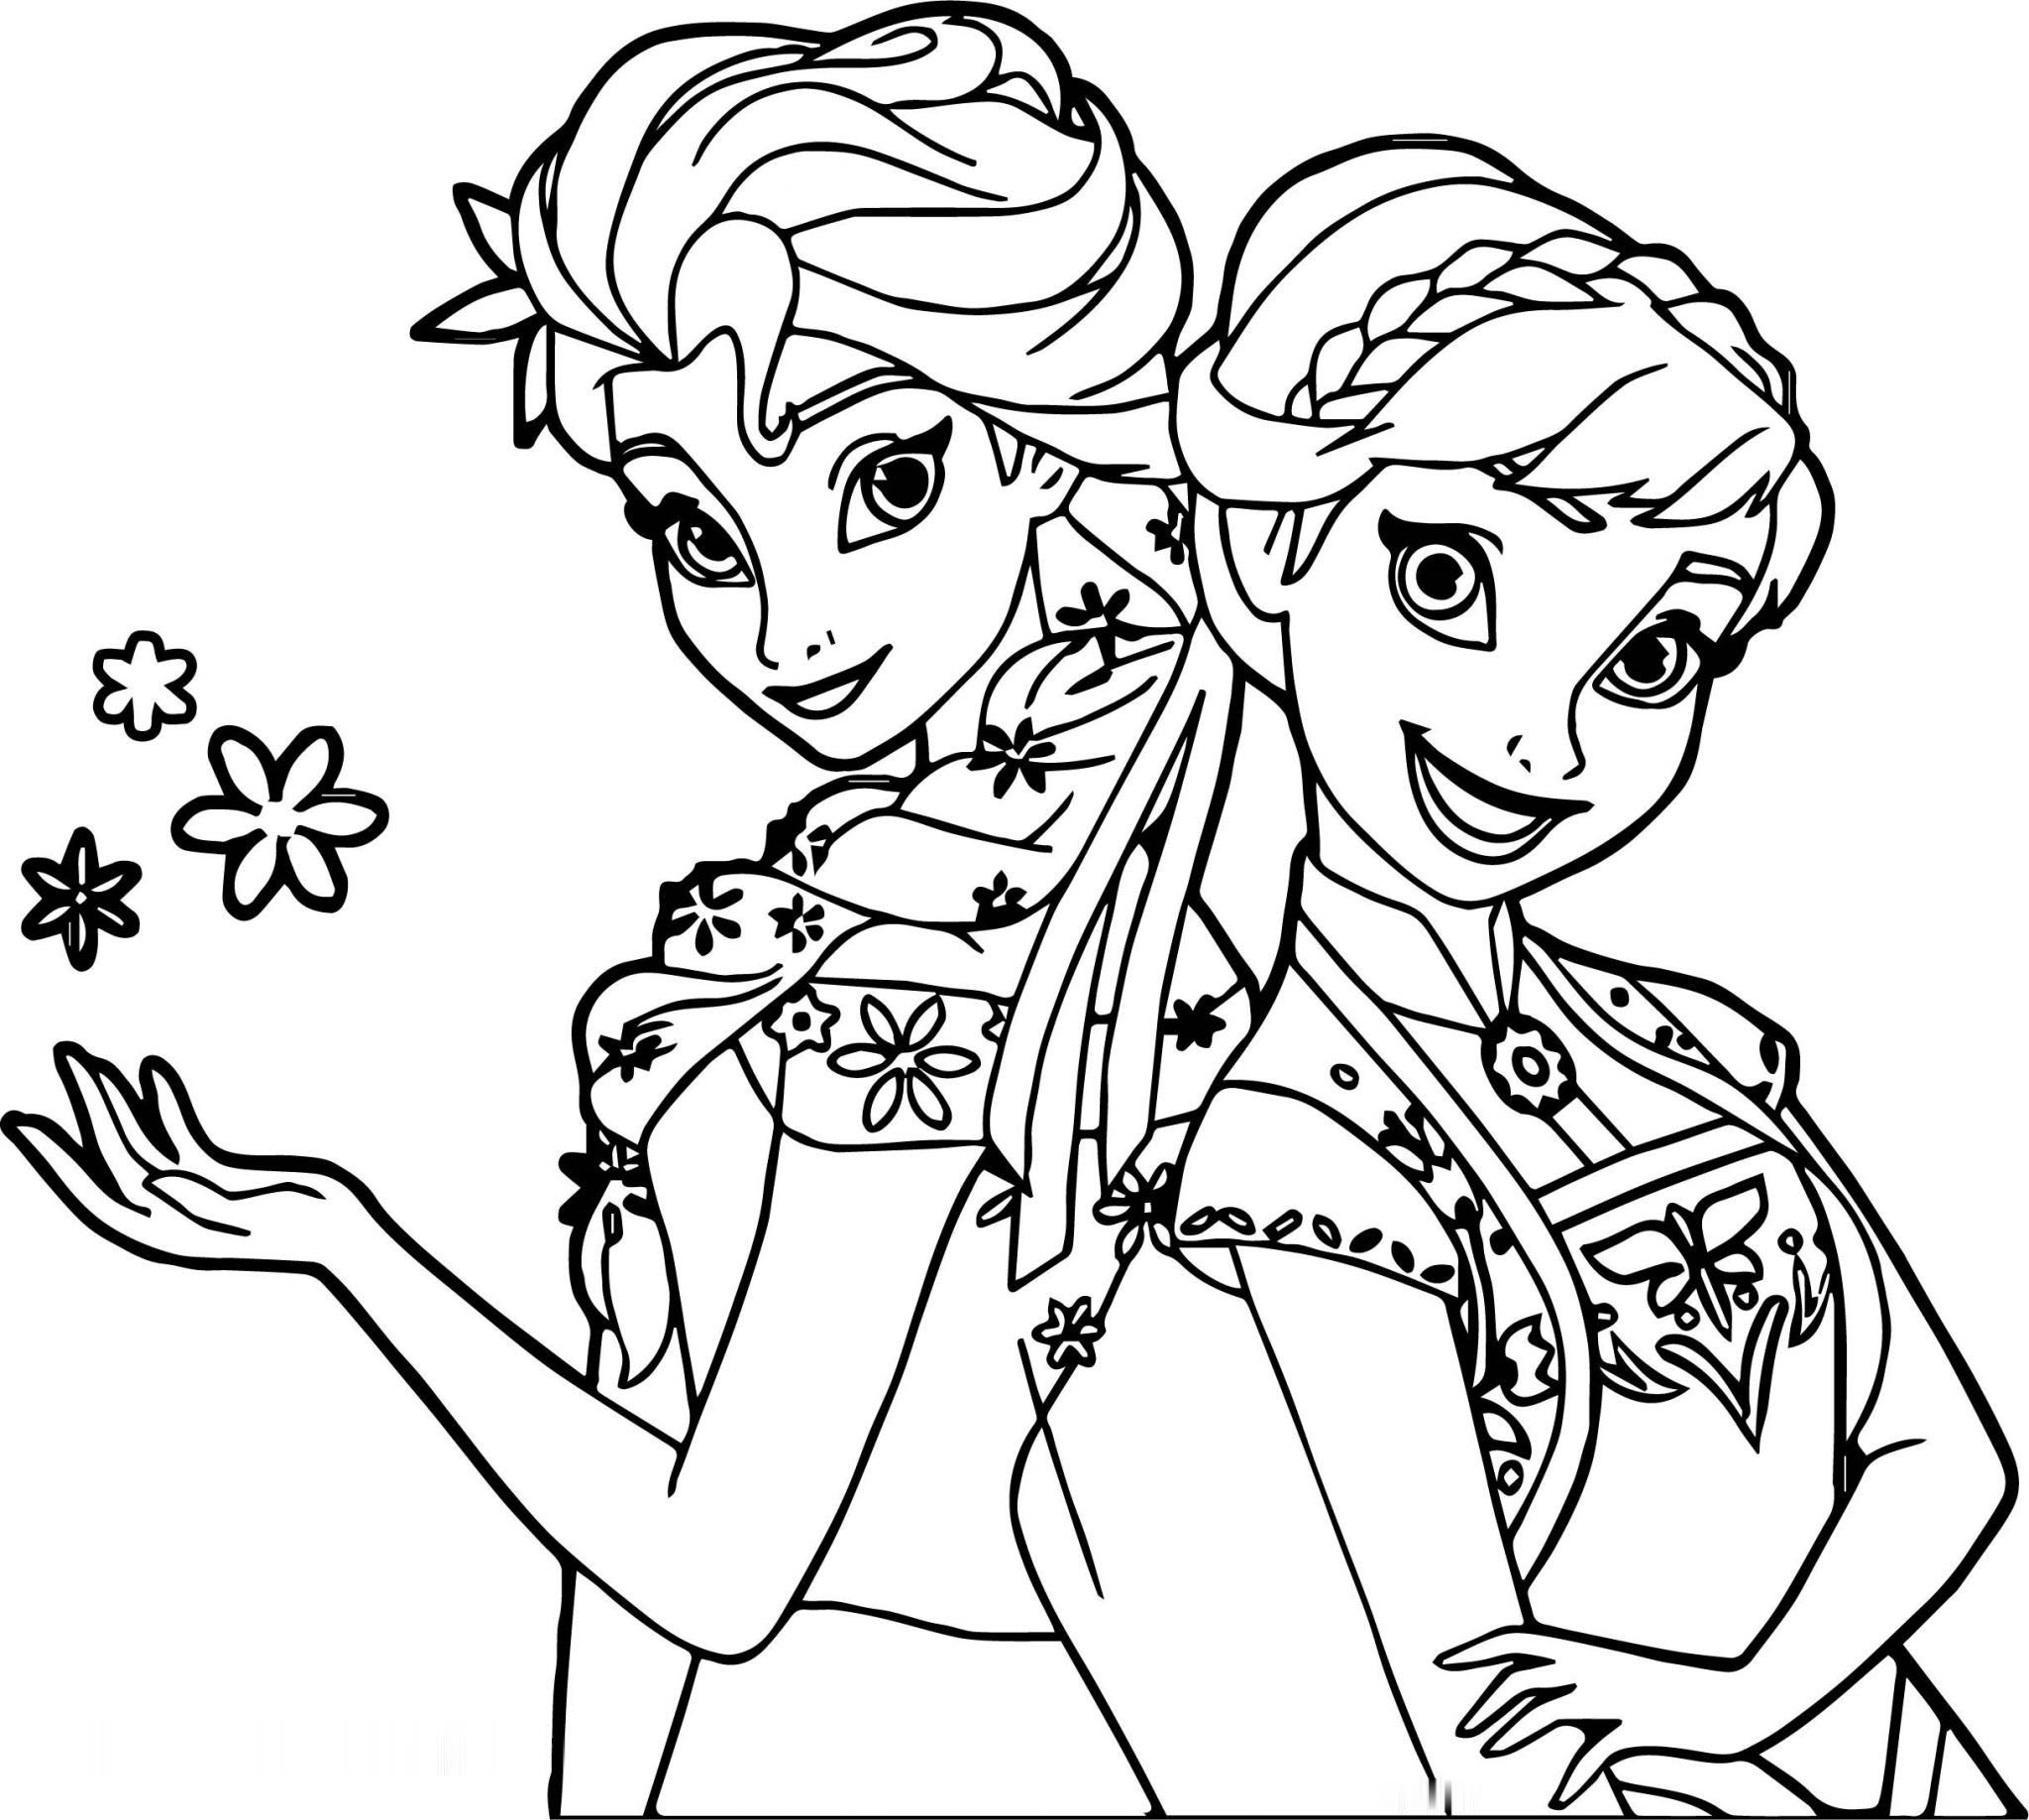 Tranh tô màu công chúa Elsa và Anna đơn giản